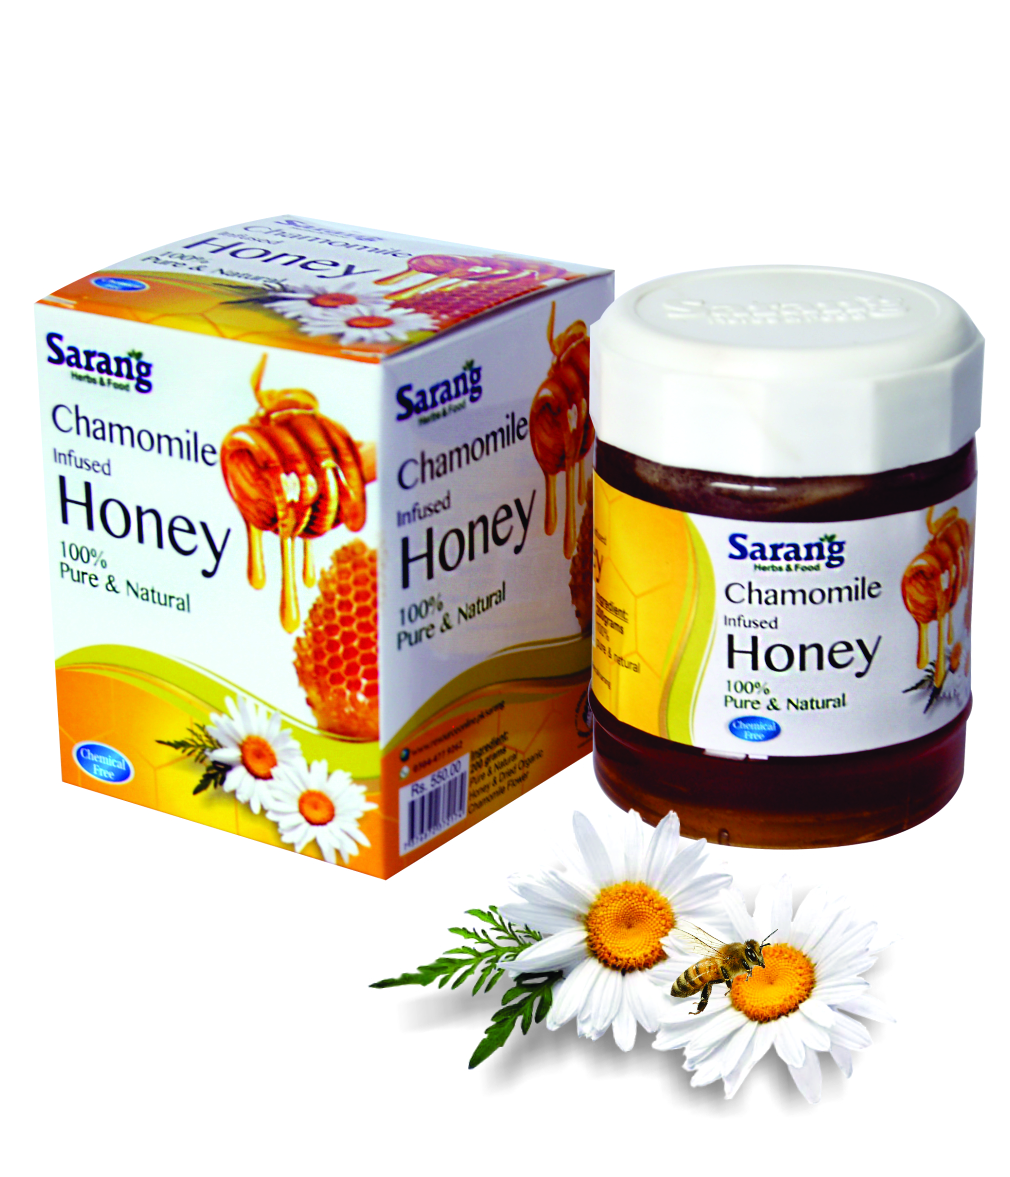 Chamomile infused Honey